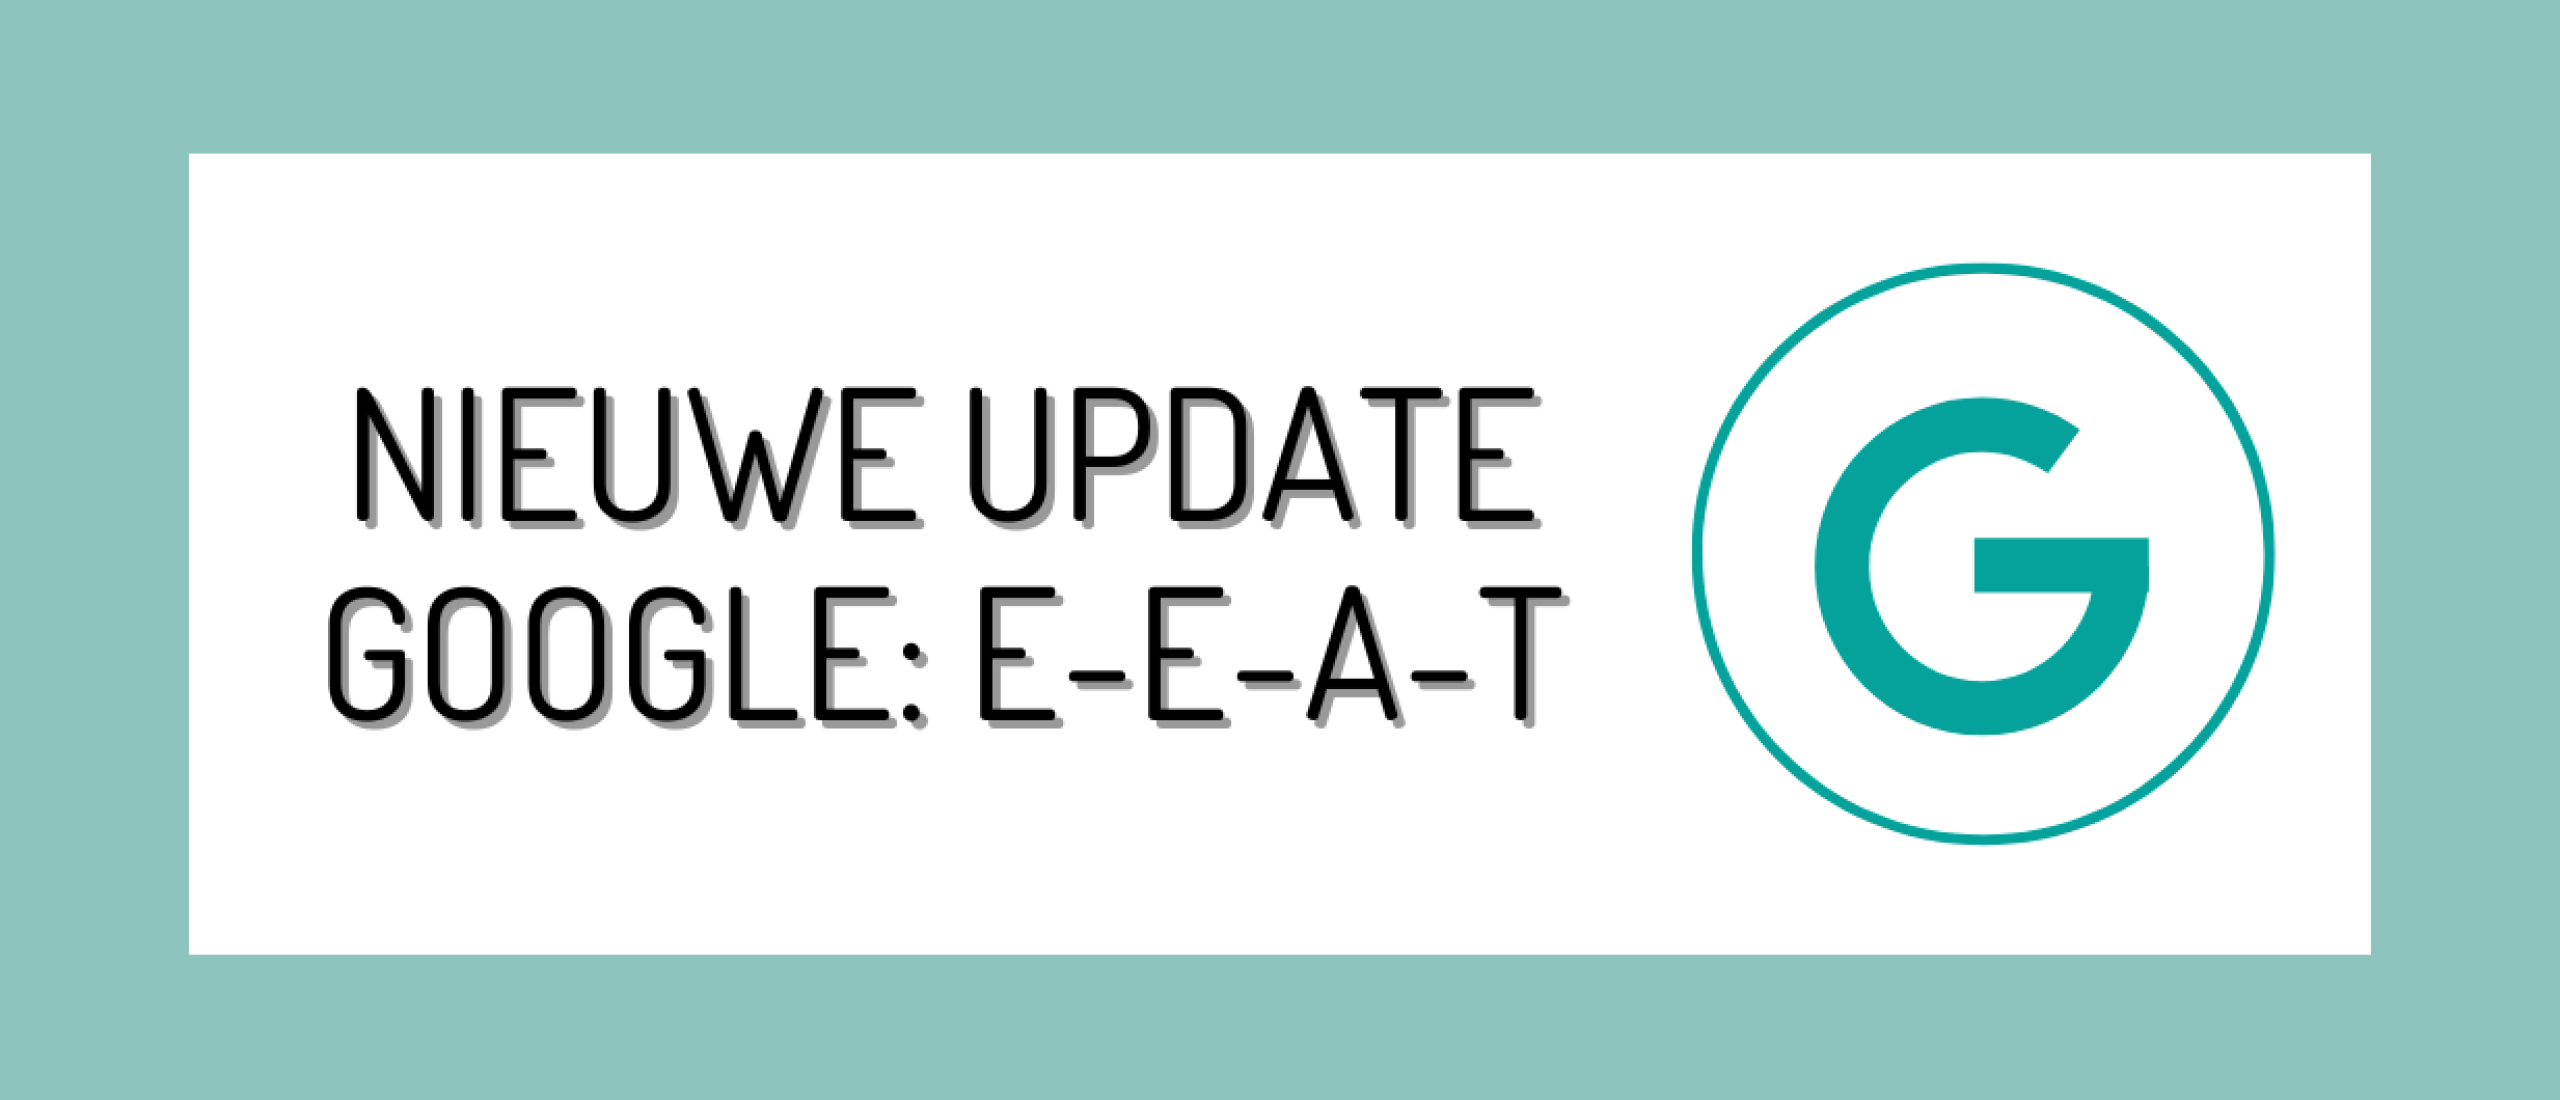 Google's E-E-A-T Update: Ervaring toegevoegd aan Expertise, Autoriteit en Betrouwbaarheid